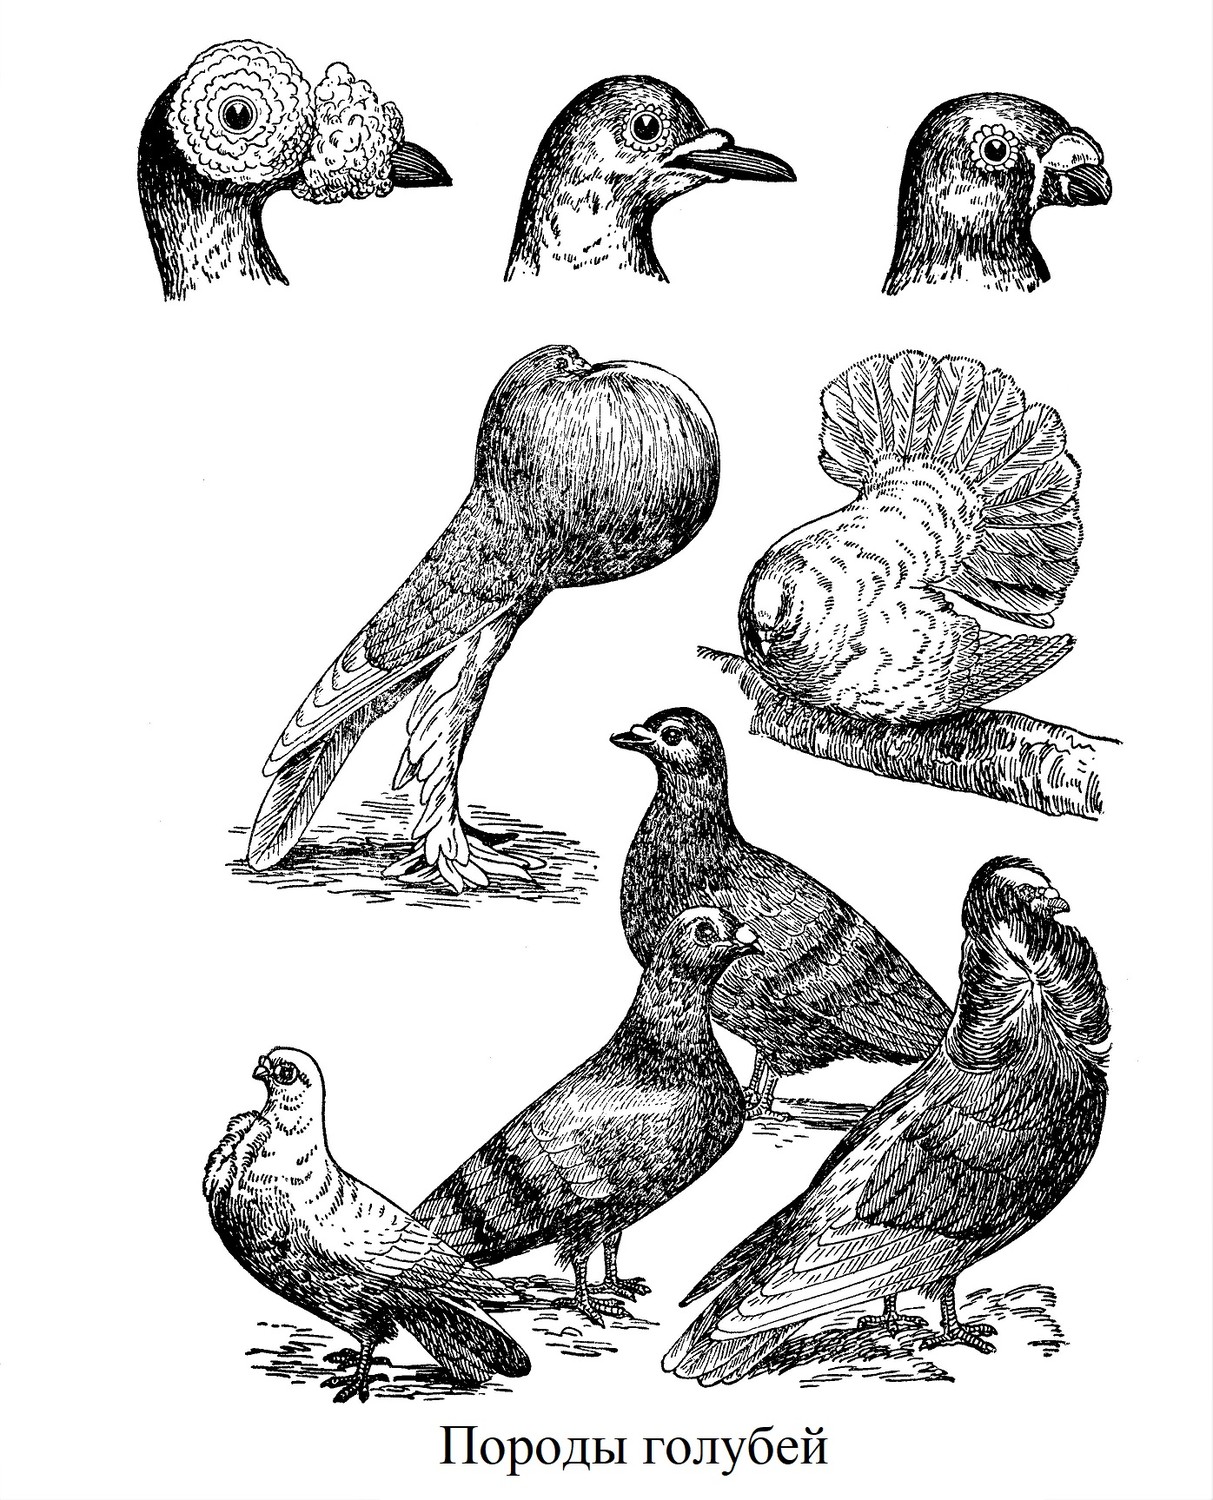 Породы голубей